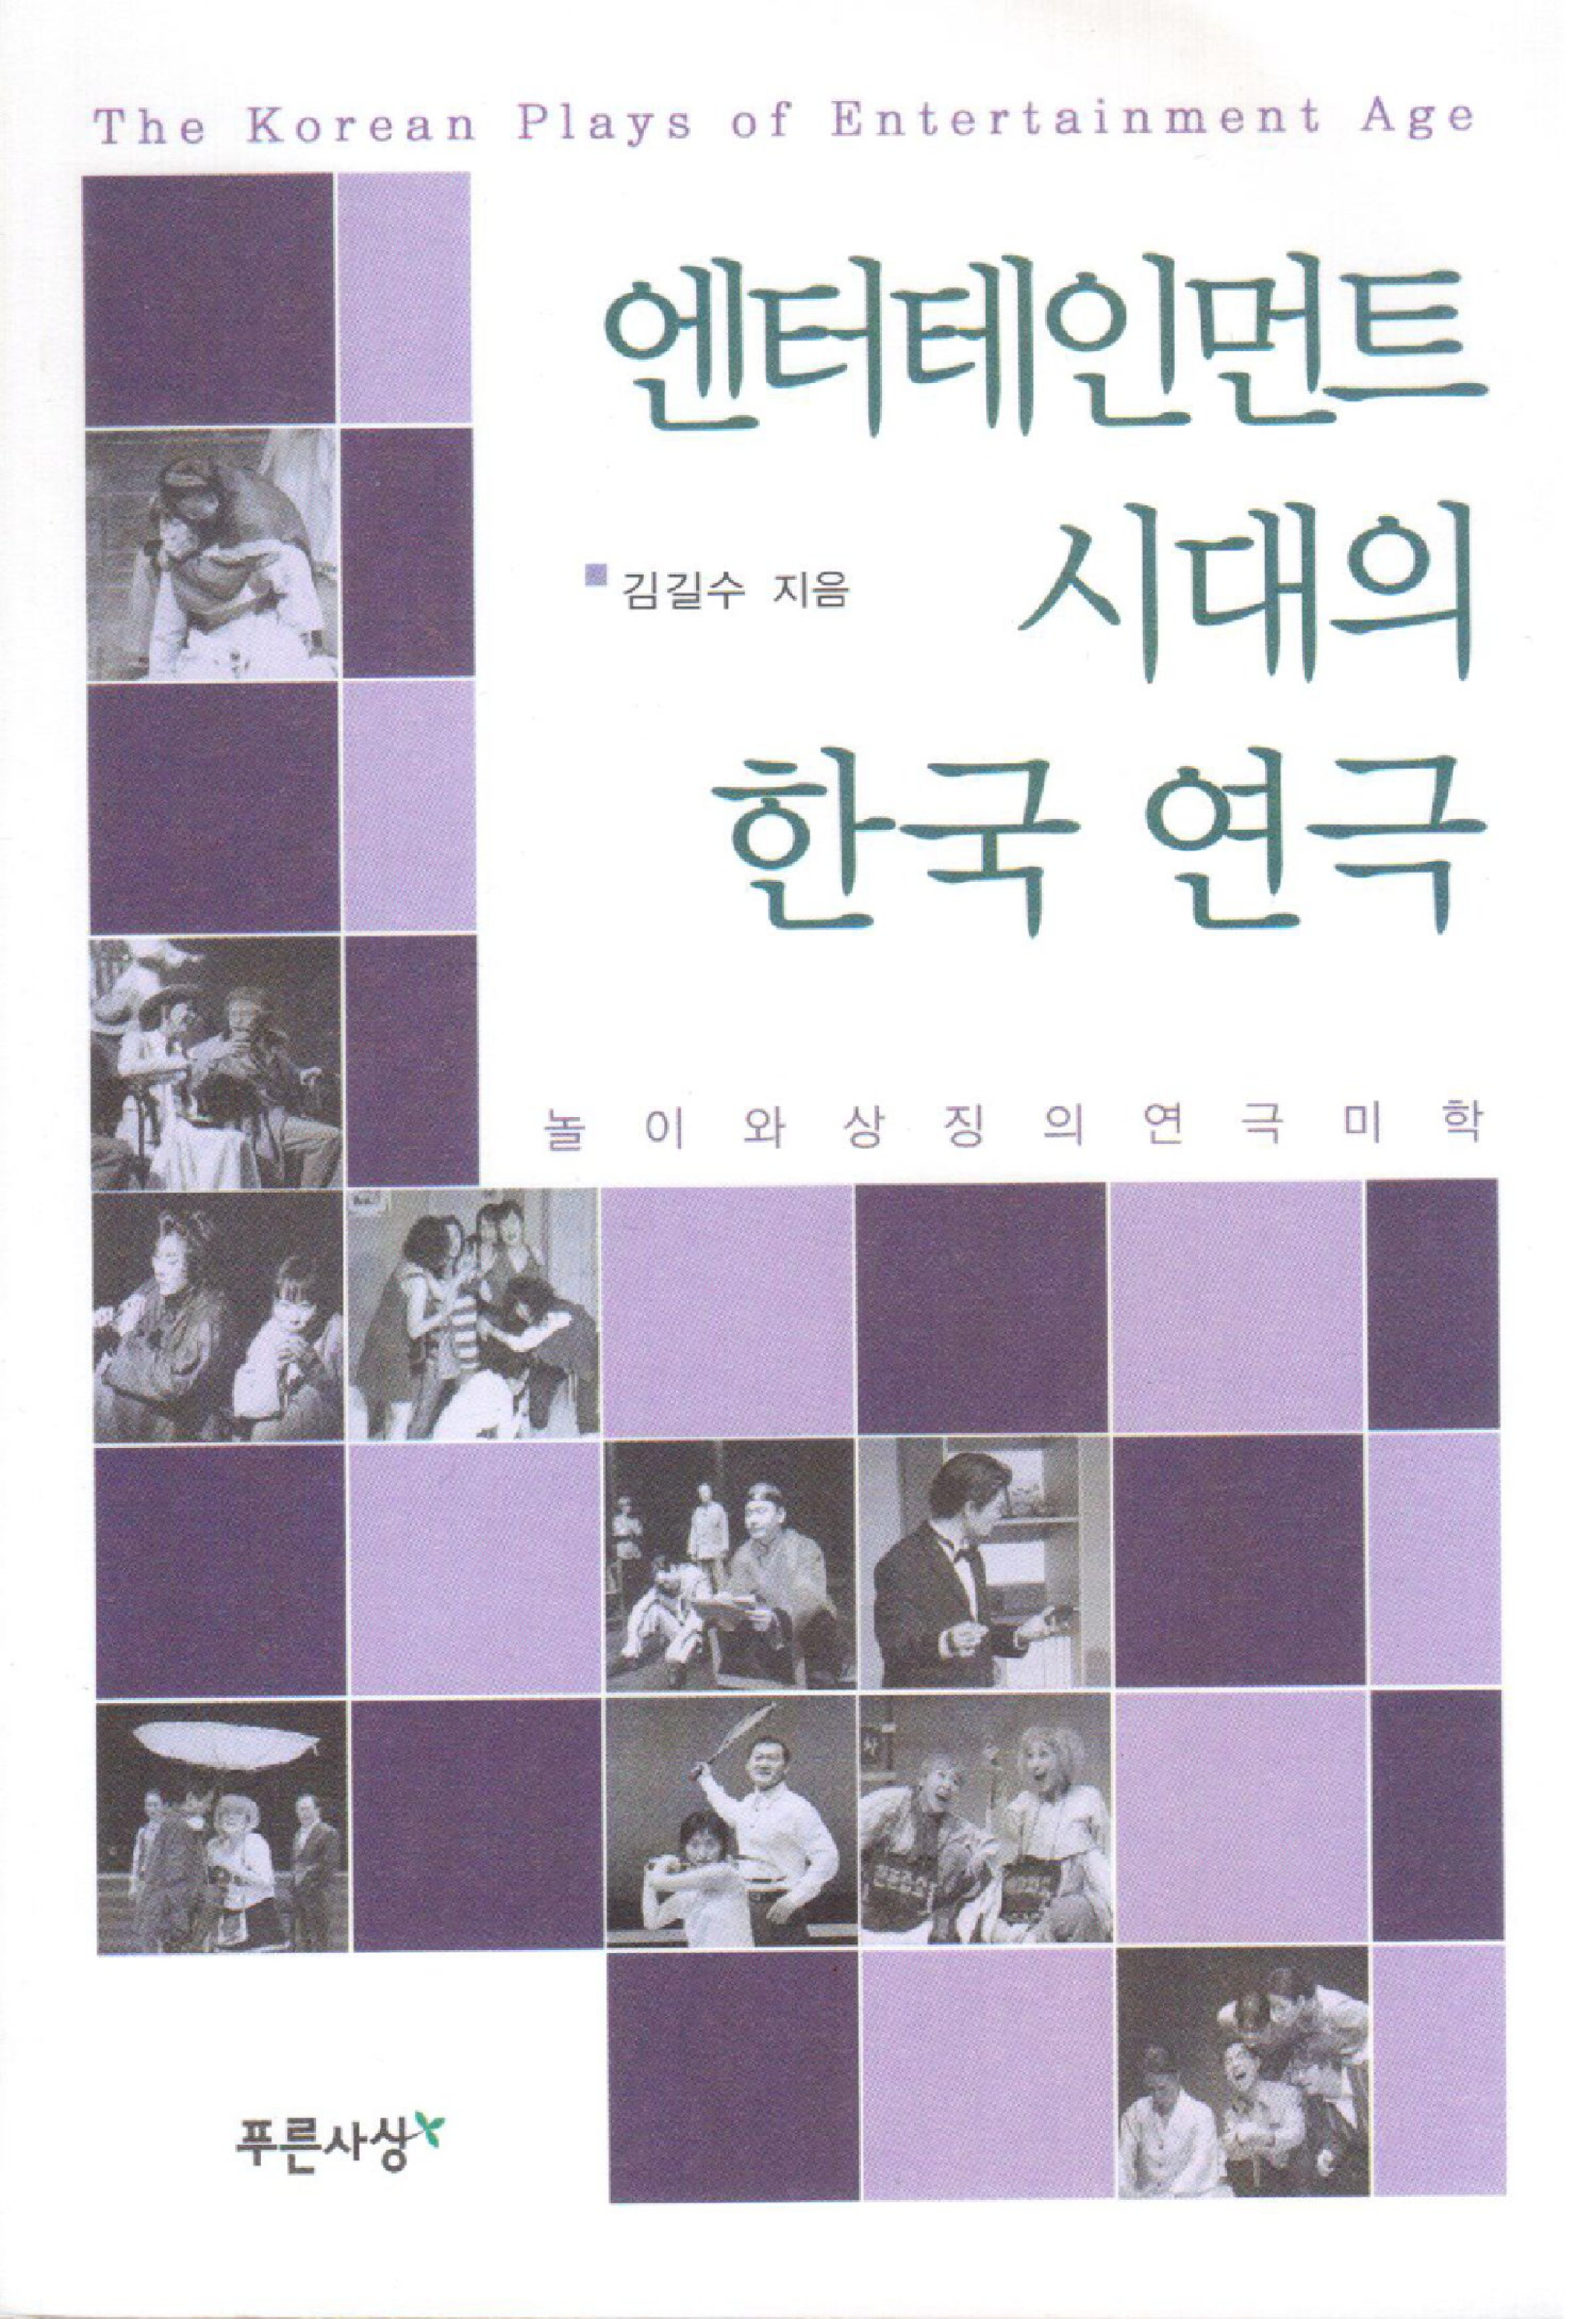 엔터테인먼트 시대의 한국 연극